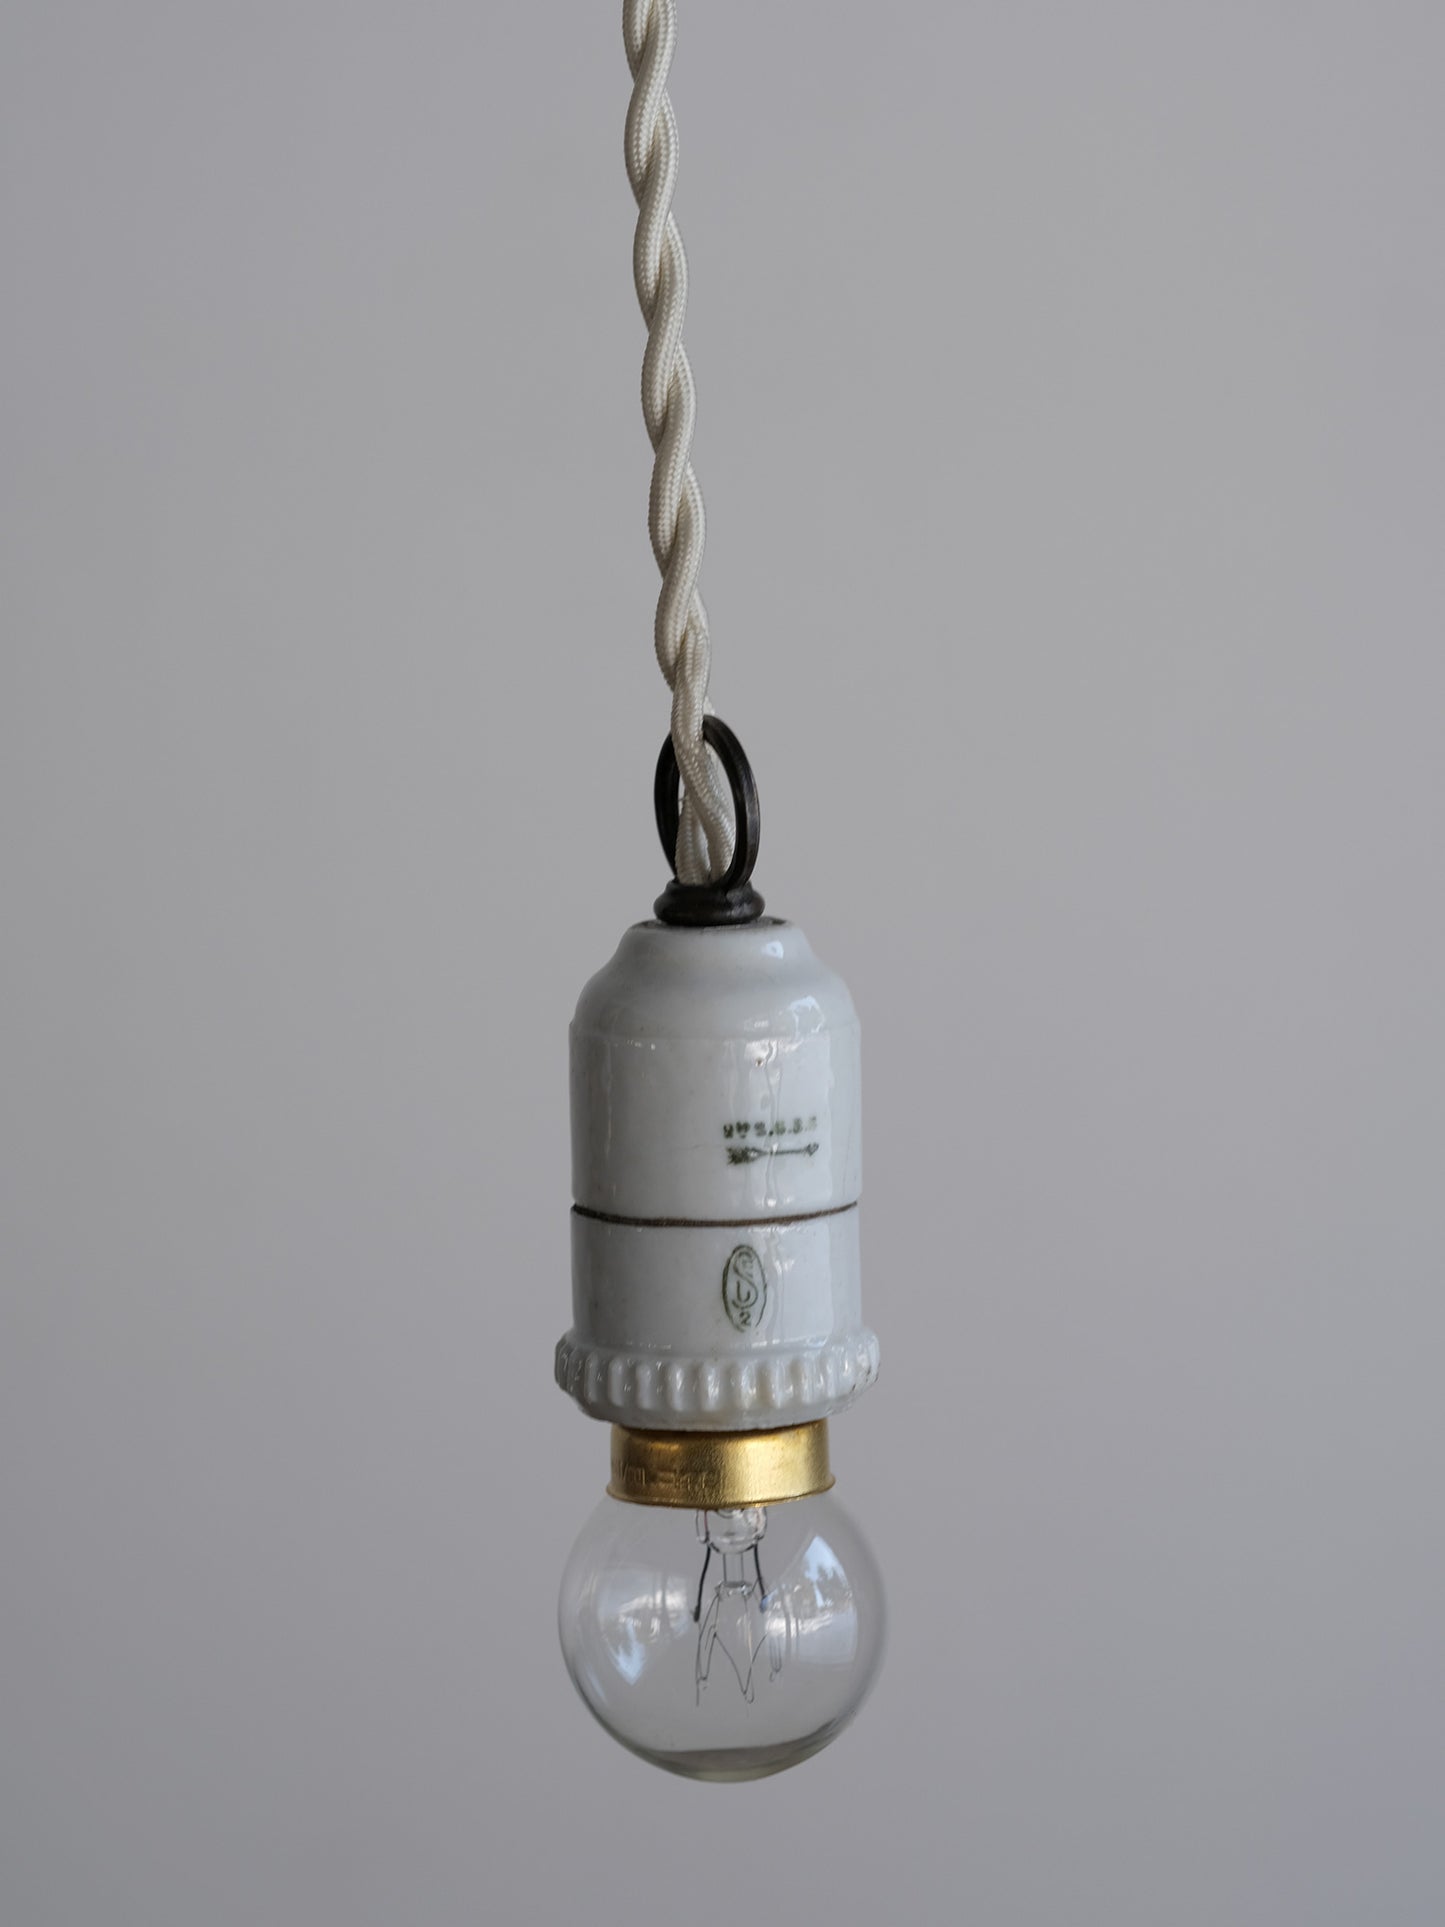 PORCELAINE SOCKET LAMP:A